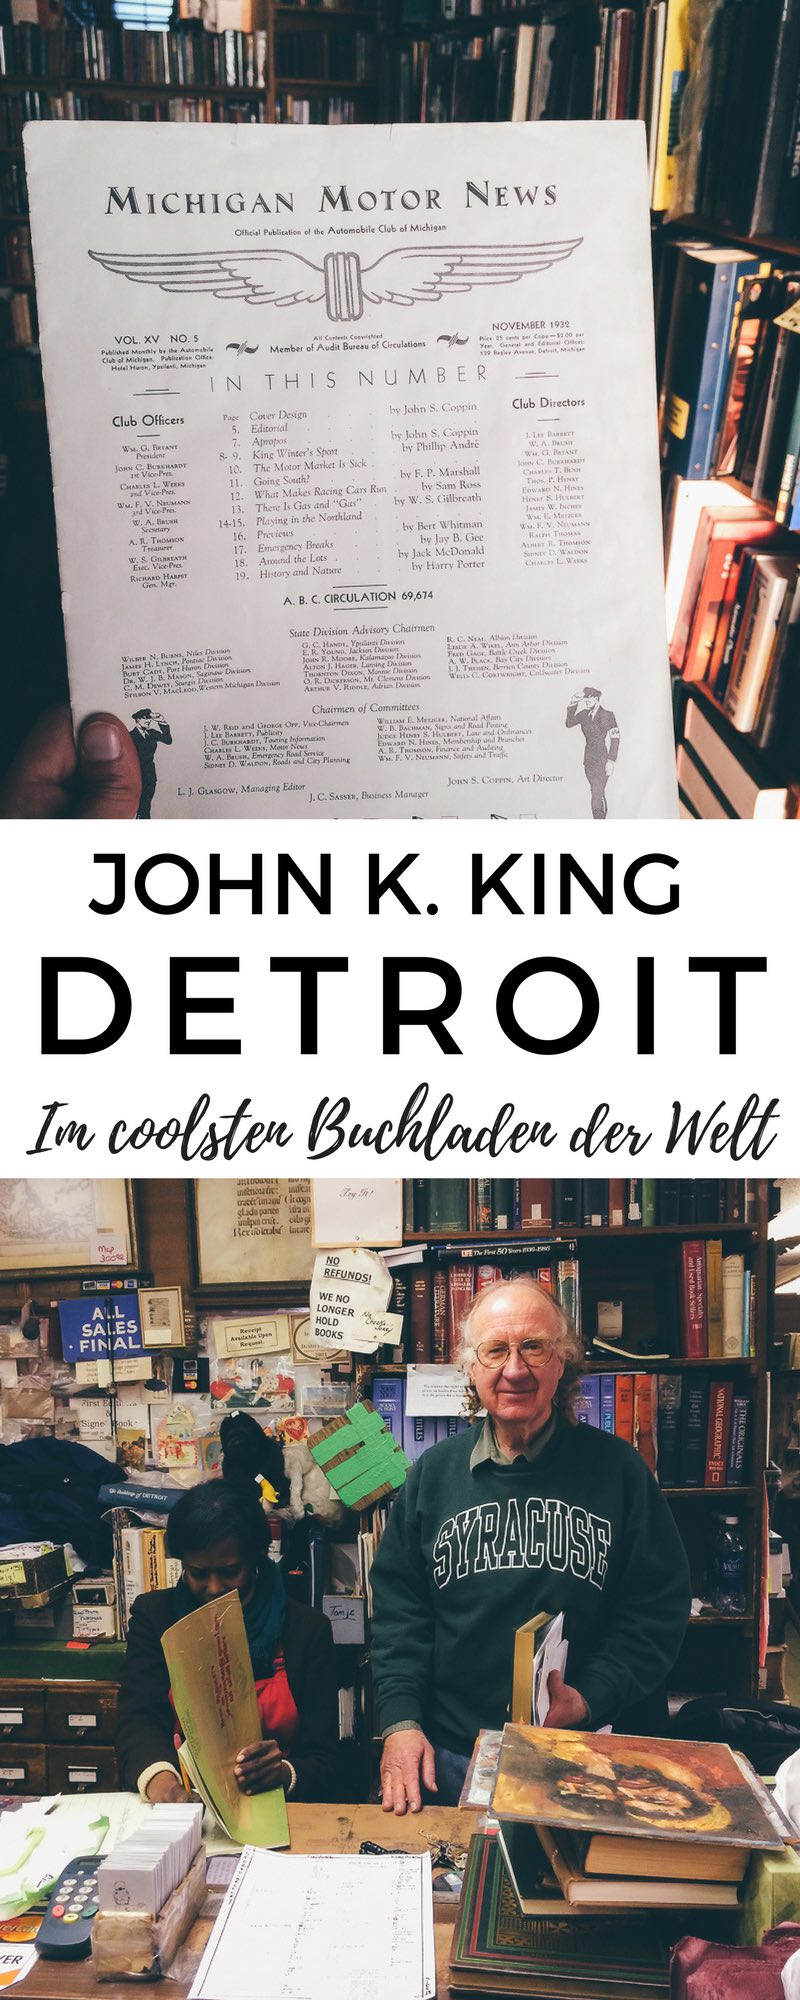 John K King Books in Detroit